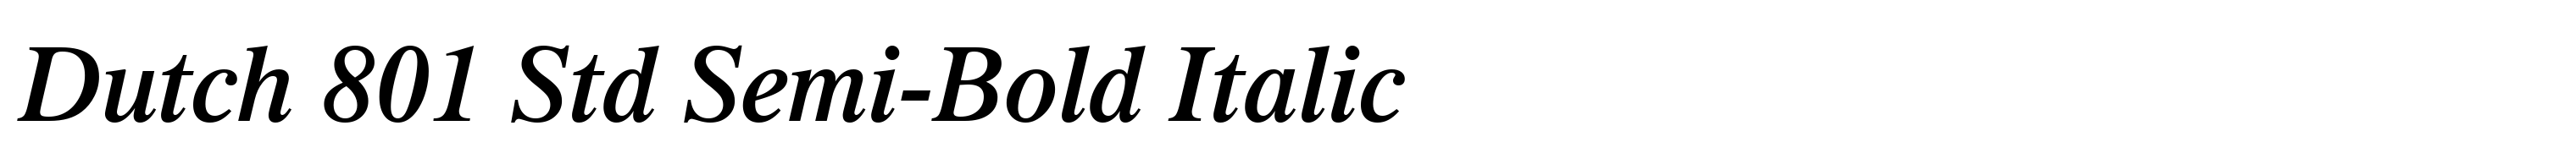 Dutch 801 Std Semi-Bold Italic